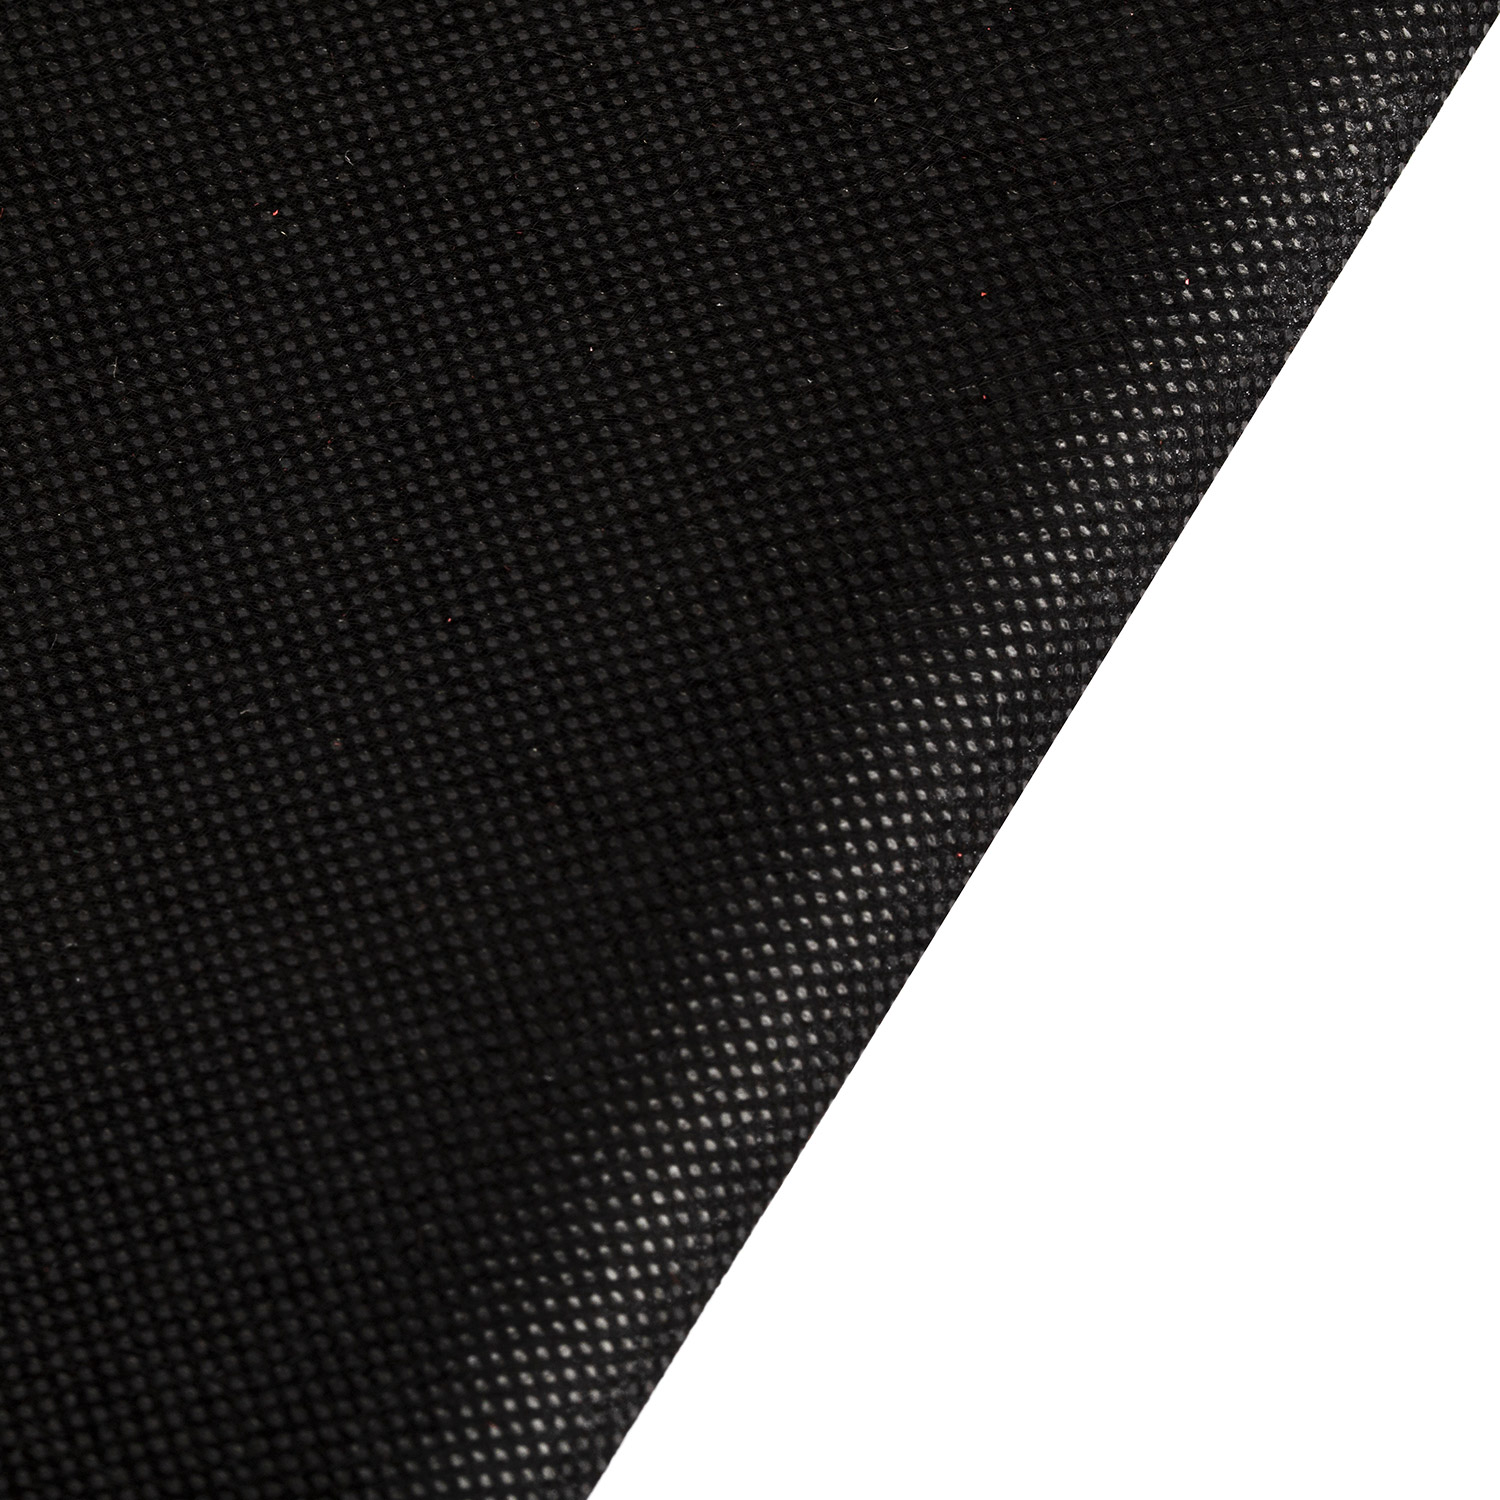 Рулон полипропиленовый спундушный нетканый материал для защитной одежды